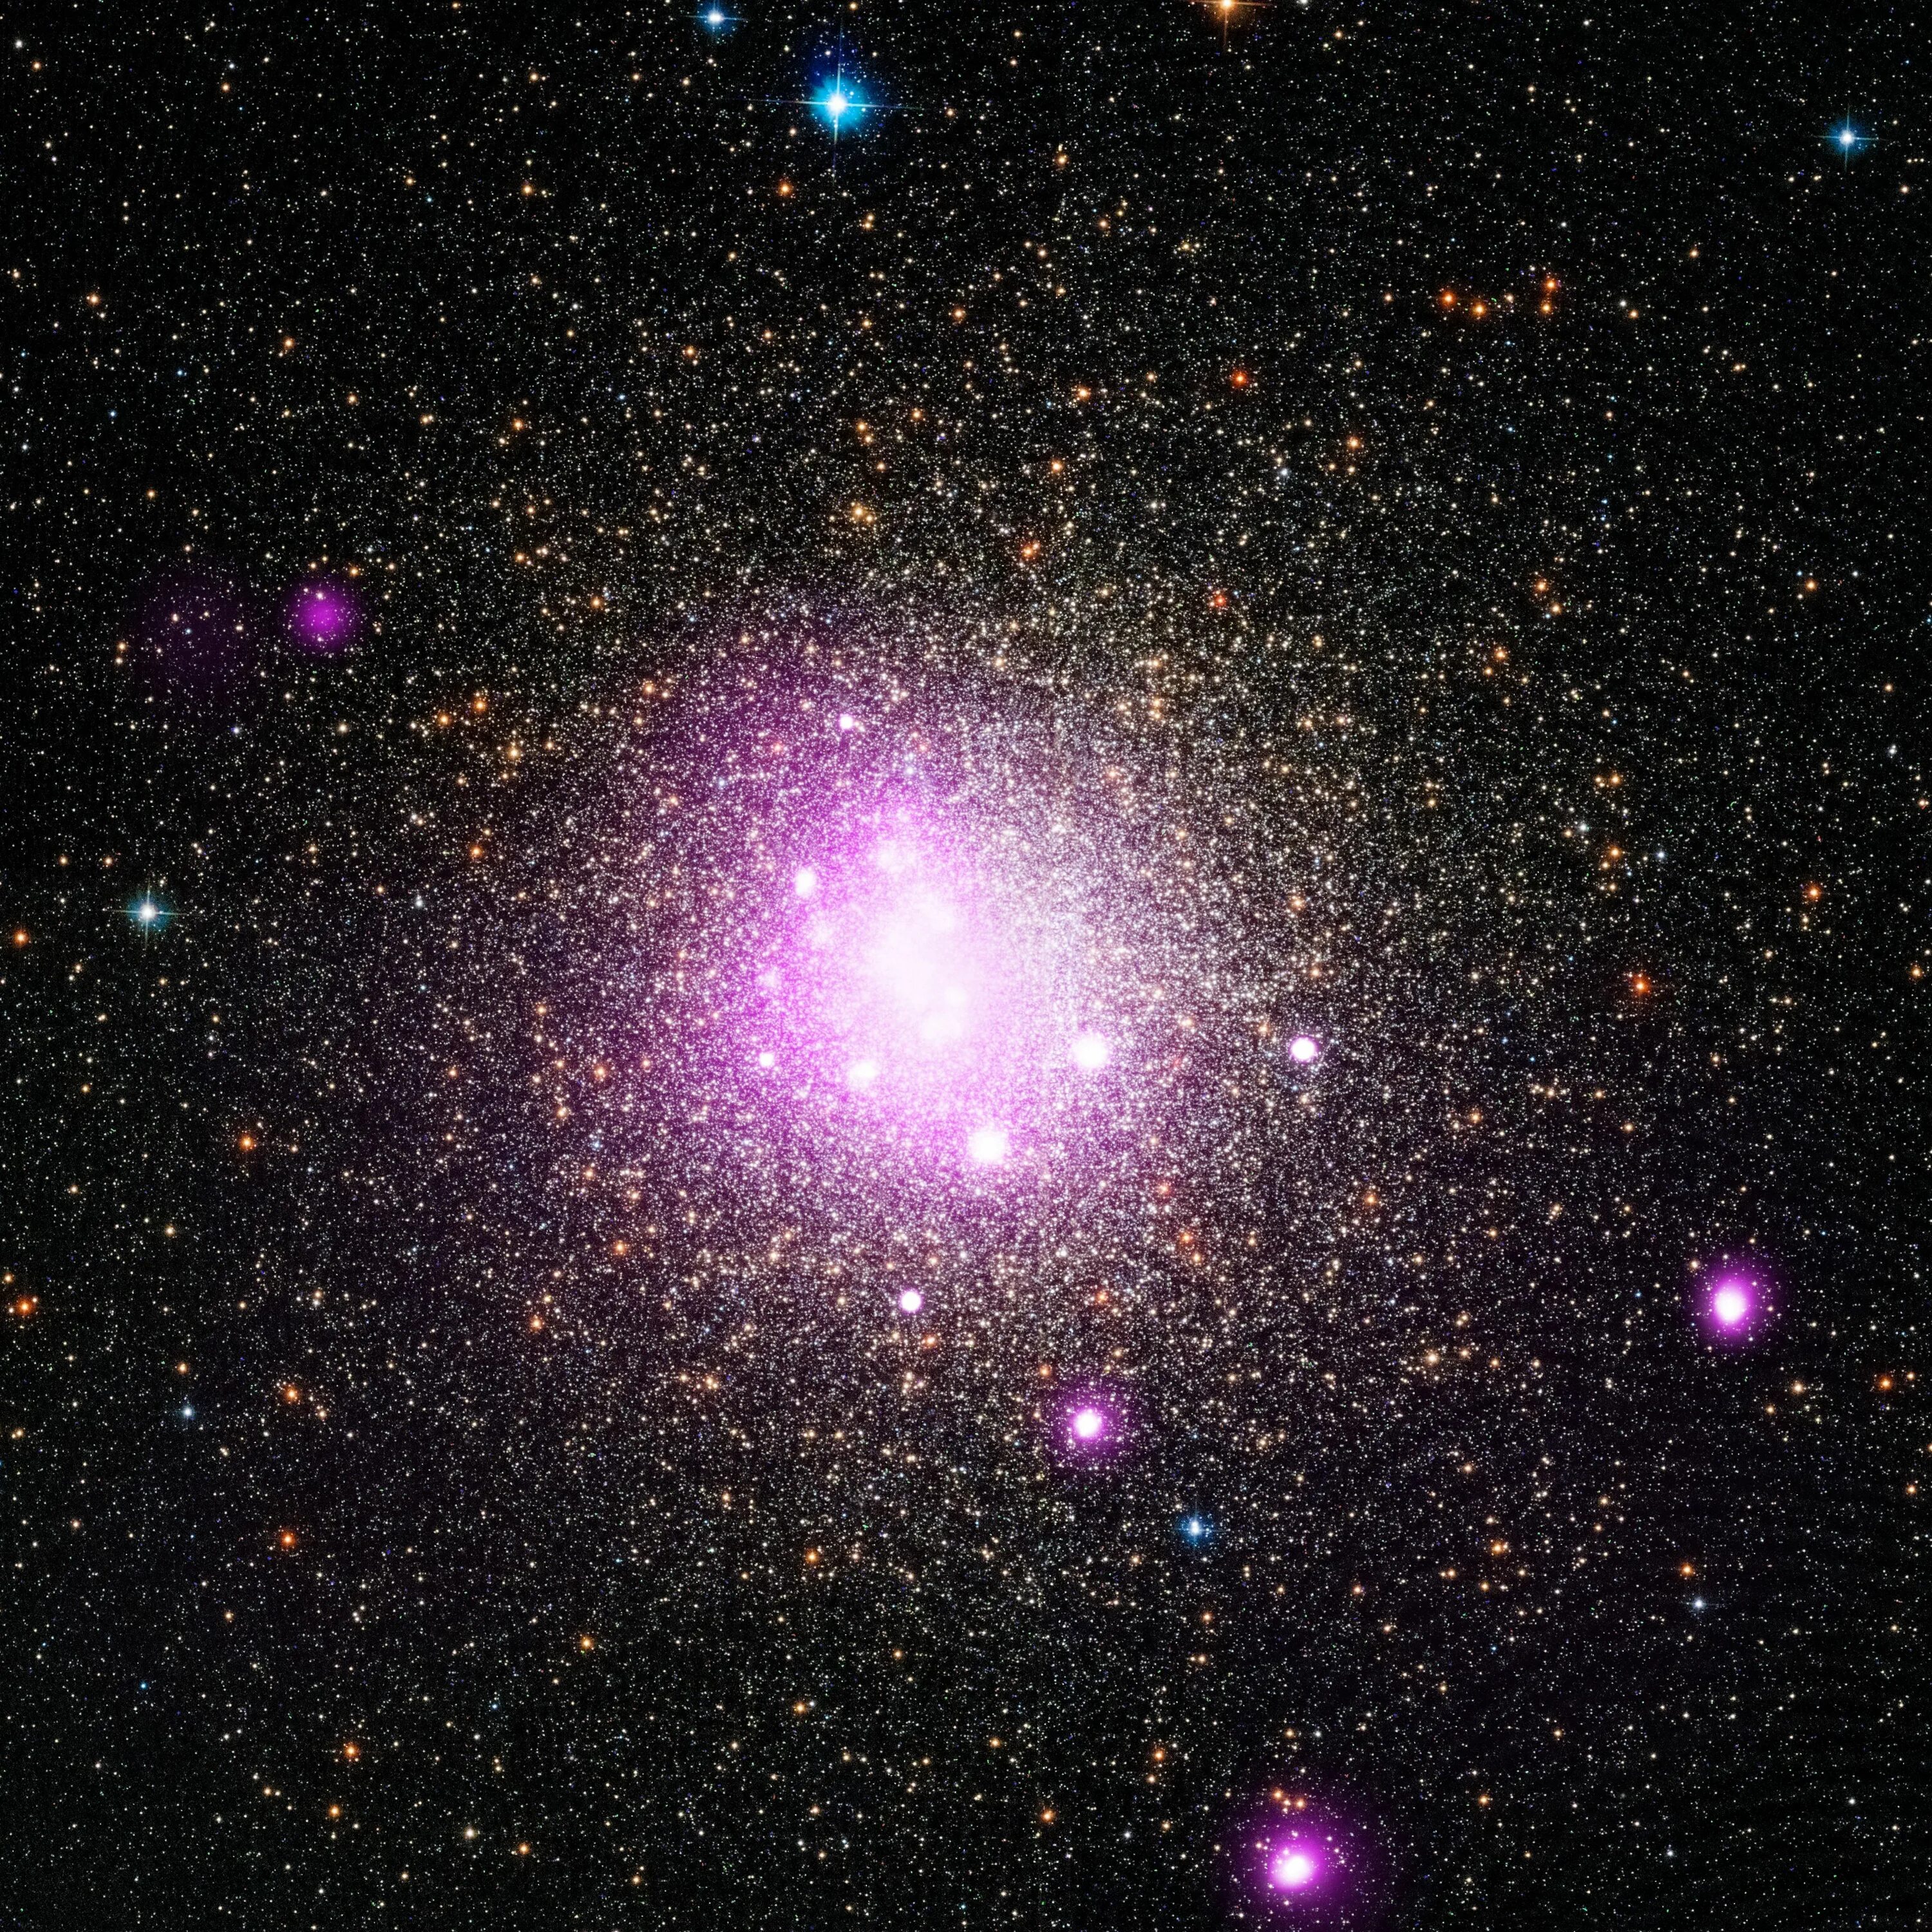 М13 Мессье. Галактика Омега Центавра. Шаровое звездное скопление Омега Центавра. Шаровое скопление м13 в созвездии геркулеса. Солнце яркая звезда галактики